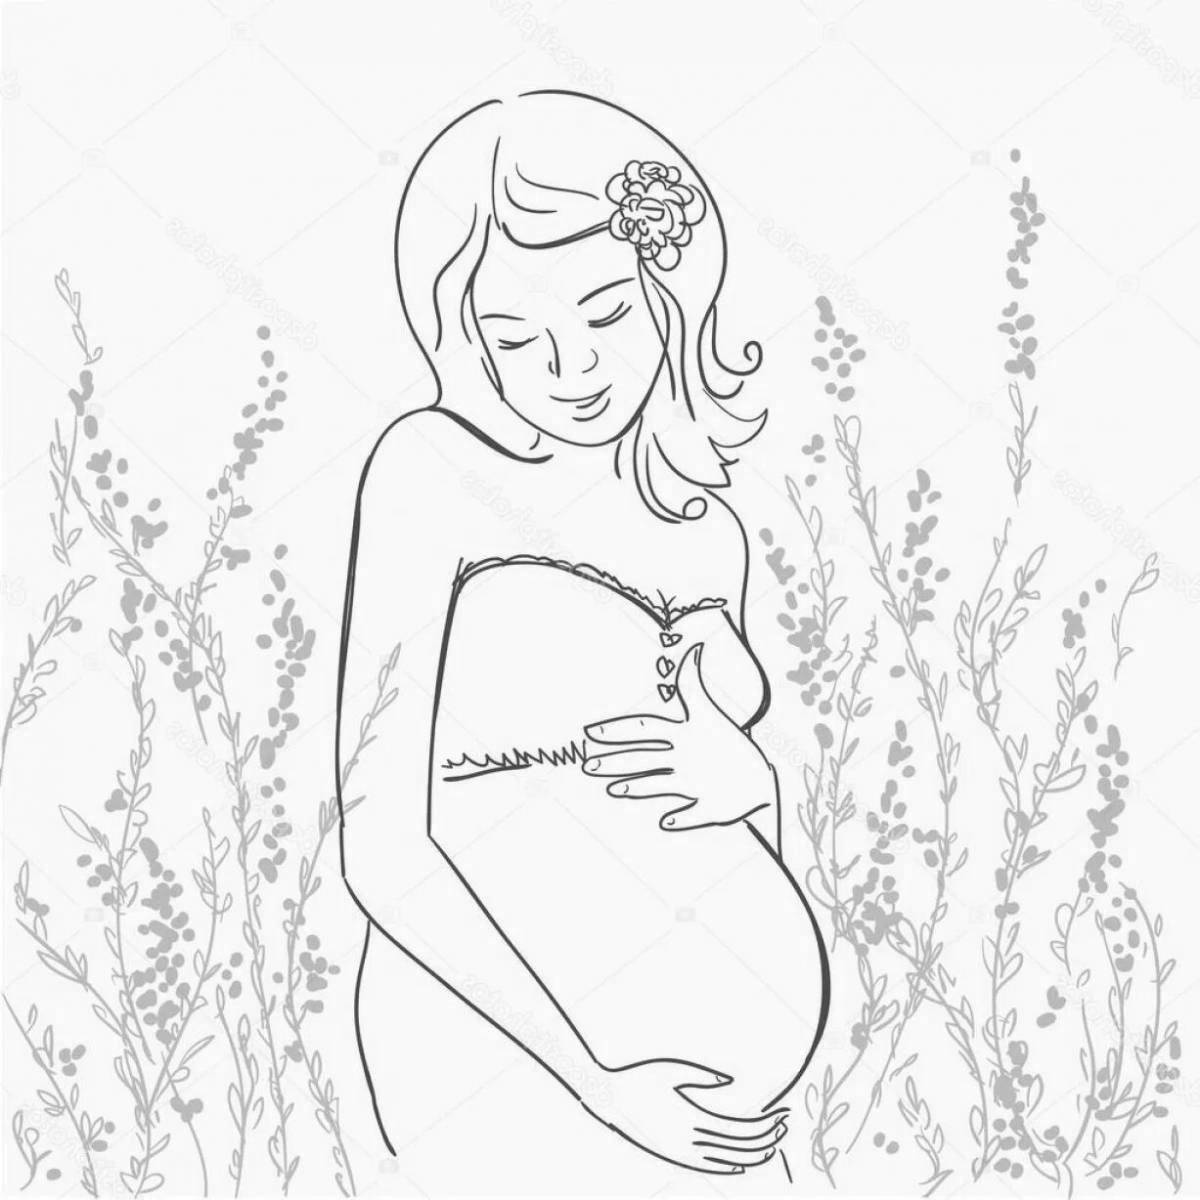 Pregnant woman #3